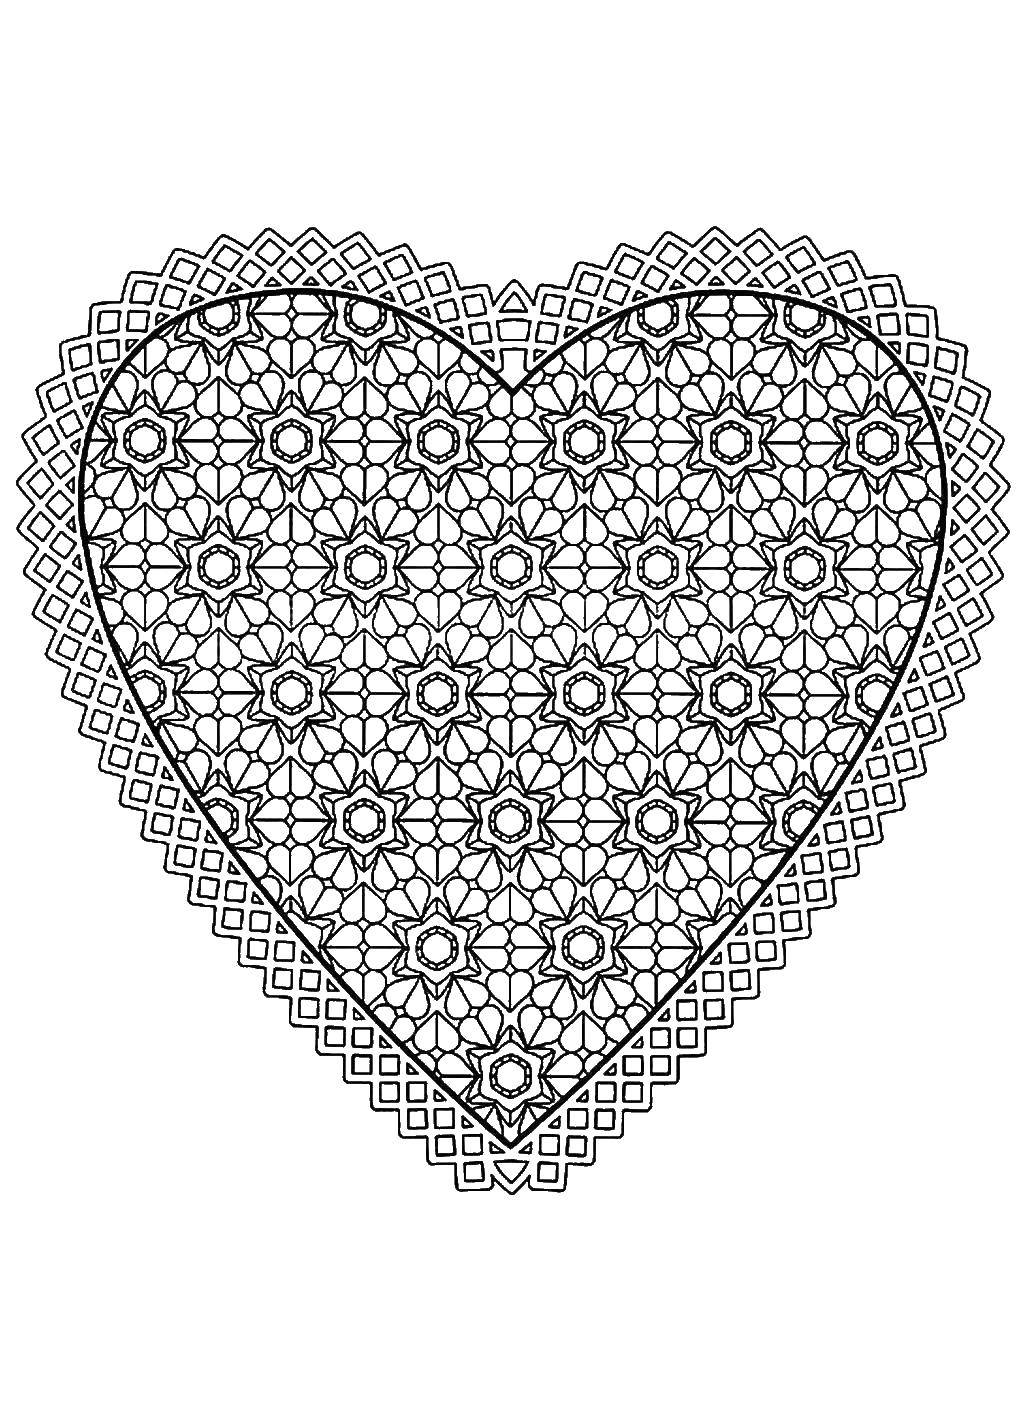 Название: Раскраска Аккуратное сердце в узорах. Категория: узоры. Теги: Узоры, сердечки.